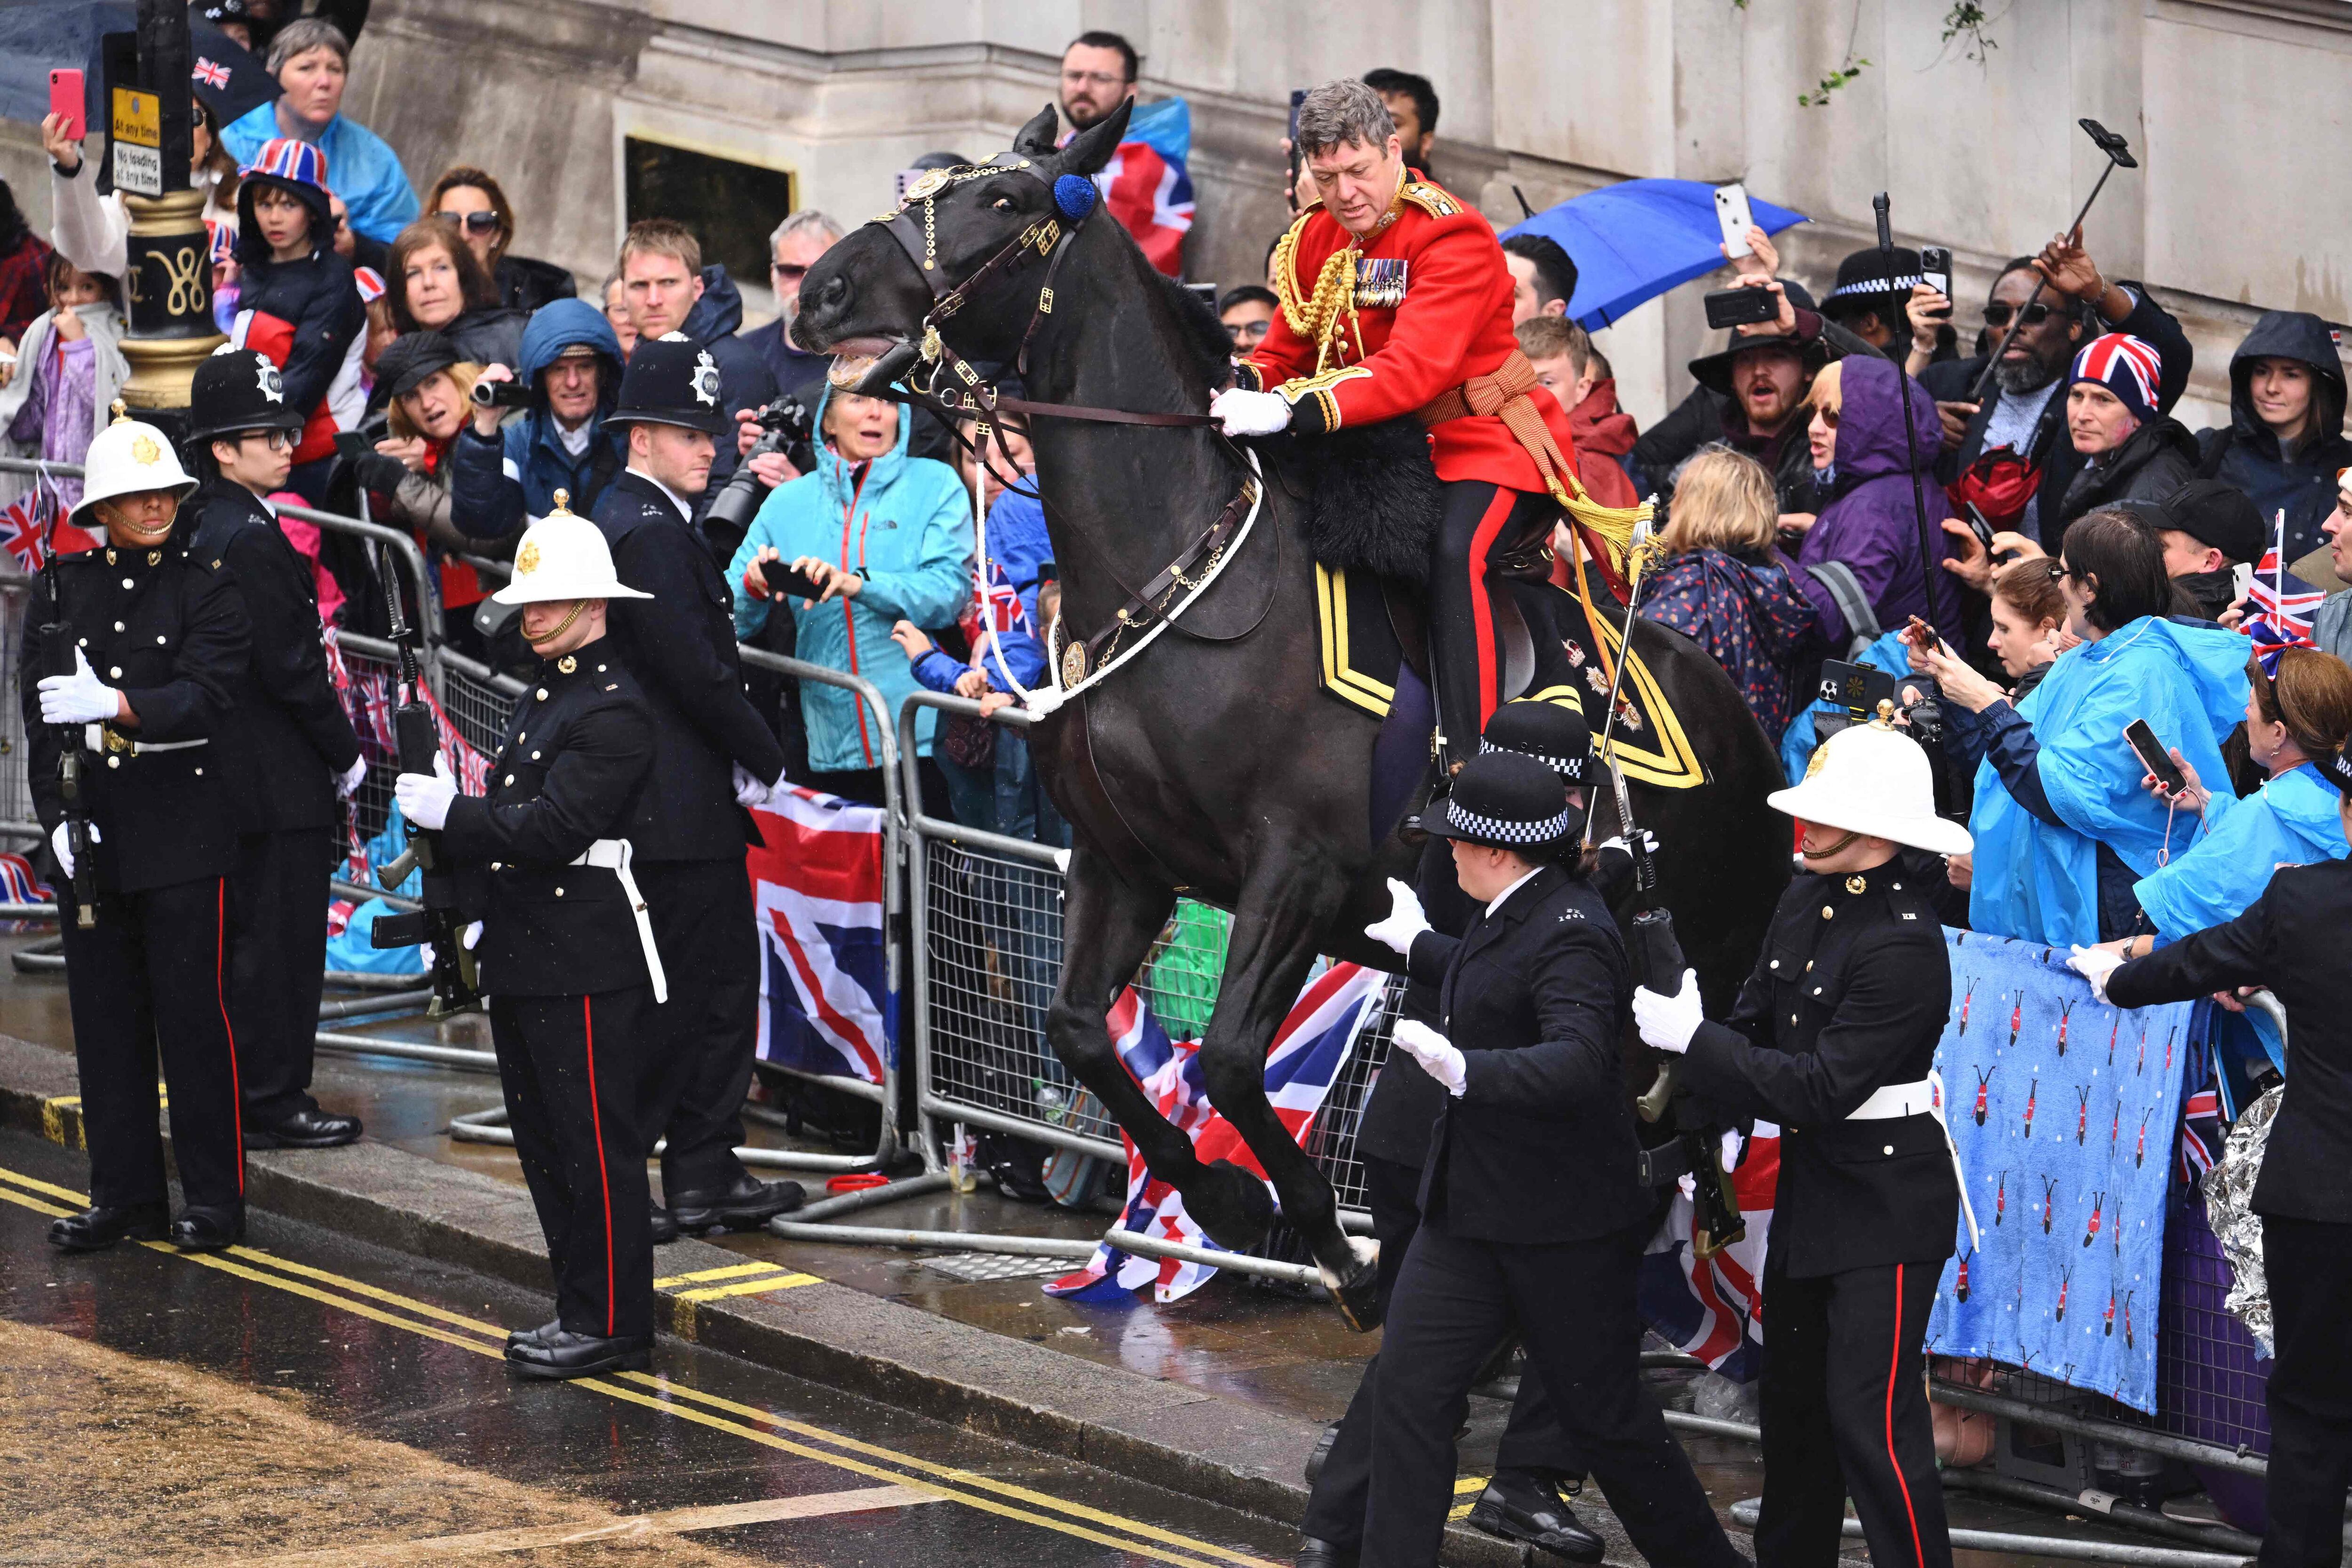 Durante la procesión del rey, uno de los caballos perdió el control y cayó sobre un grupo de personas. 